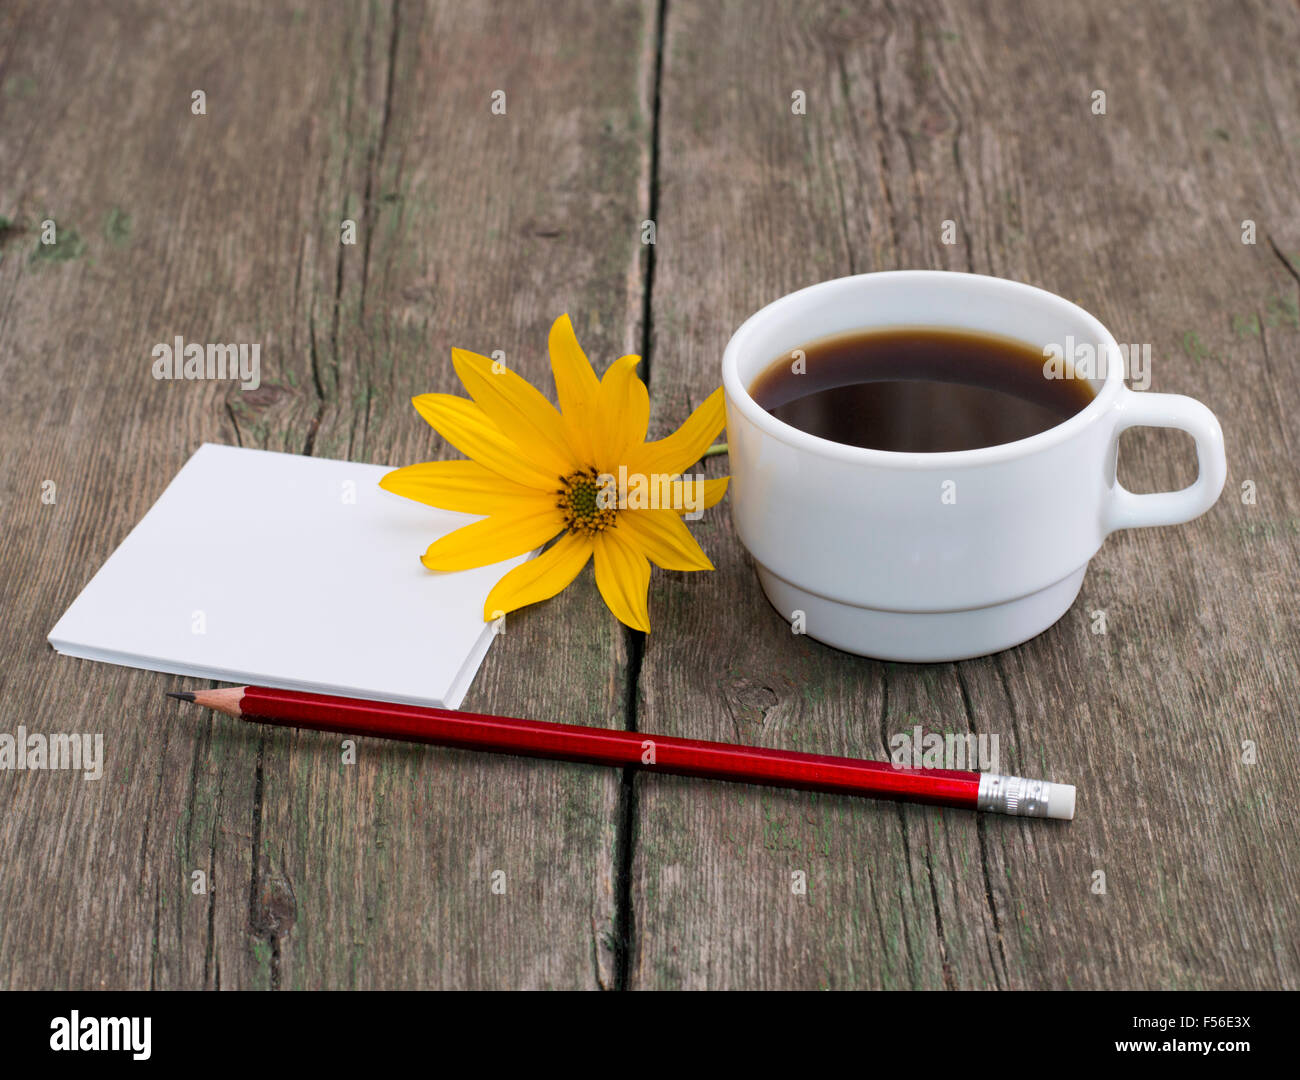 Tasse de café, un crayon à papier et une fleur jaune, une nature morte, sur une table en bois Banque D'Images